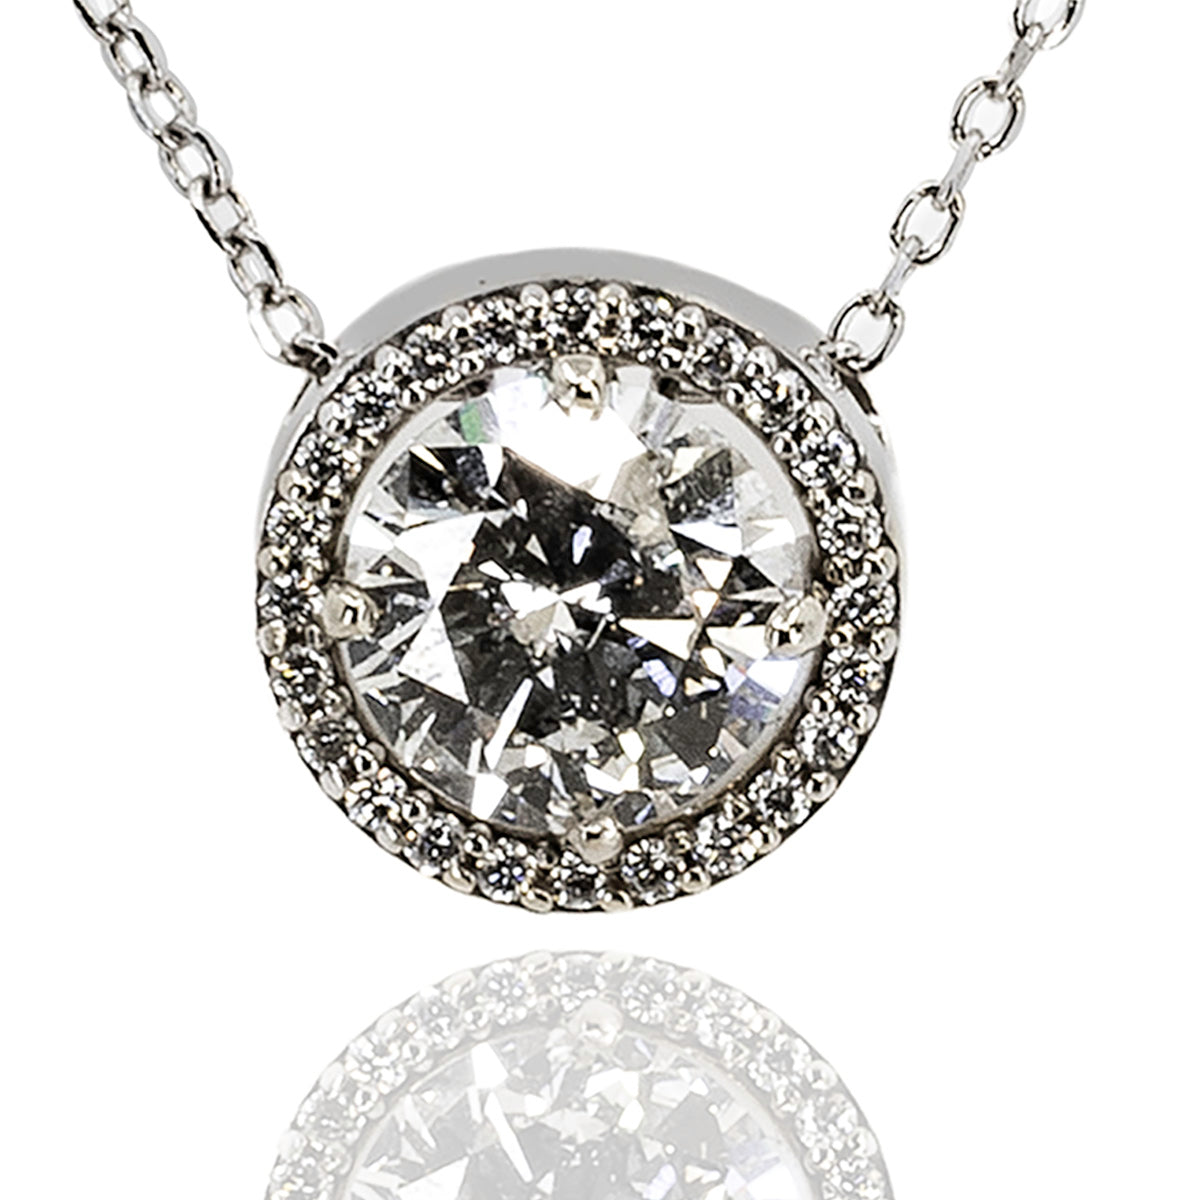 1.07 Carat Diamond Halo Necklace